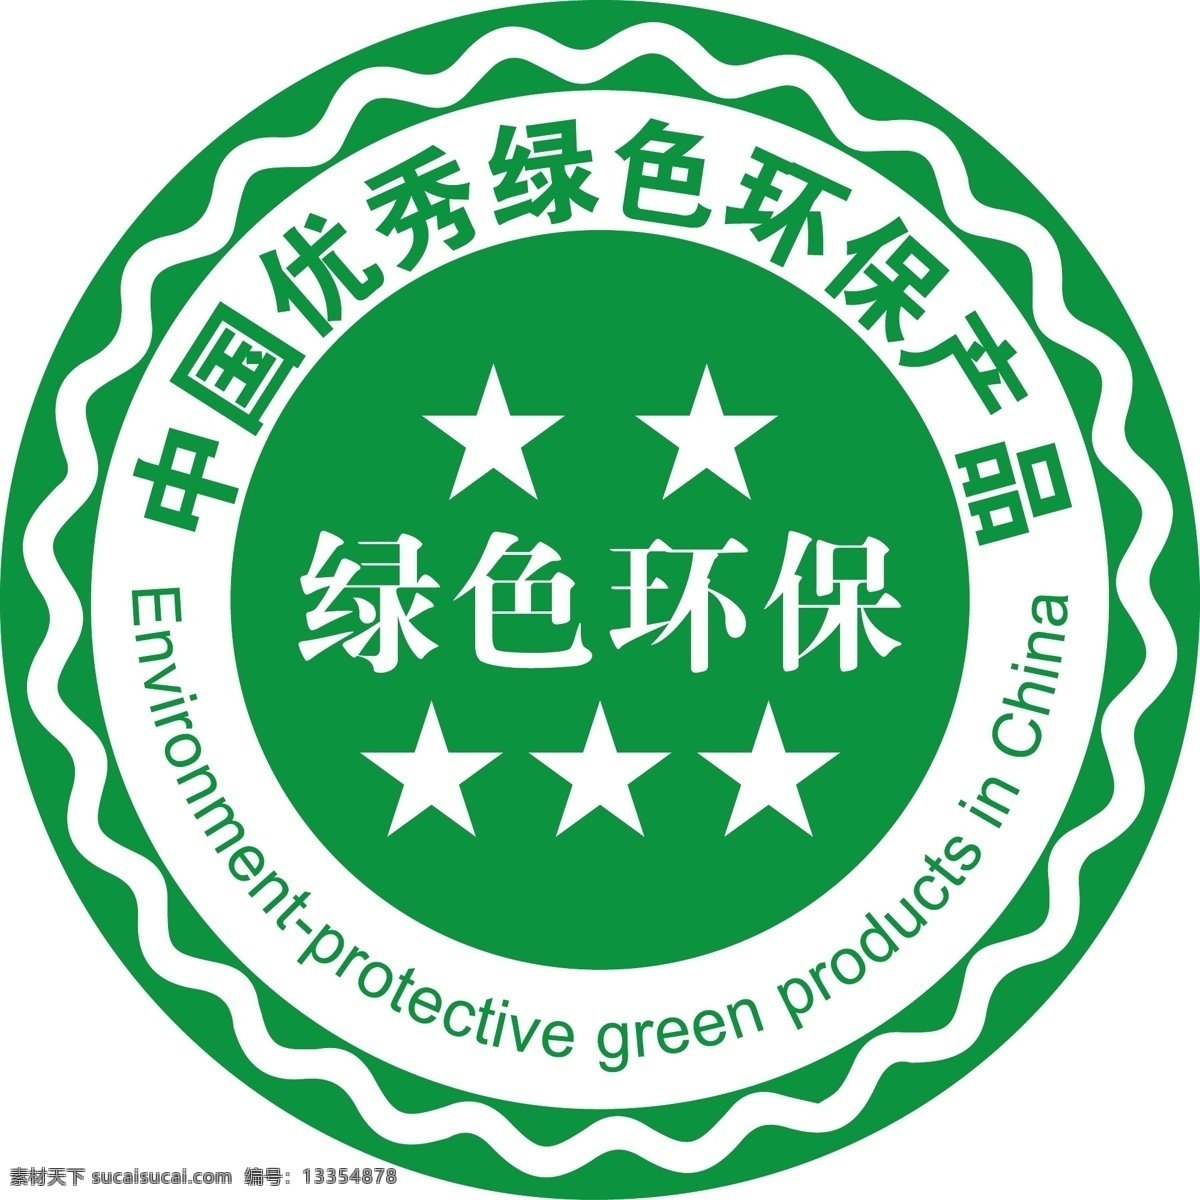 中国 优秀 绿色环保 产品 logo 环保 绿色 环保logo 标志图标 公共标识标志